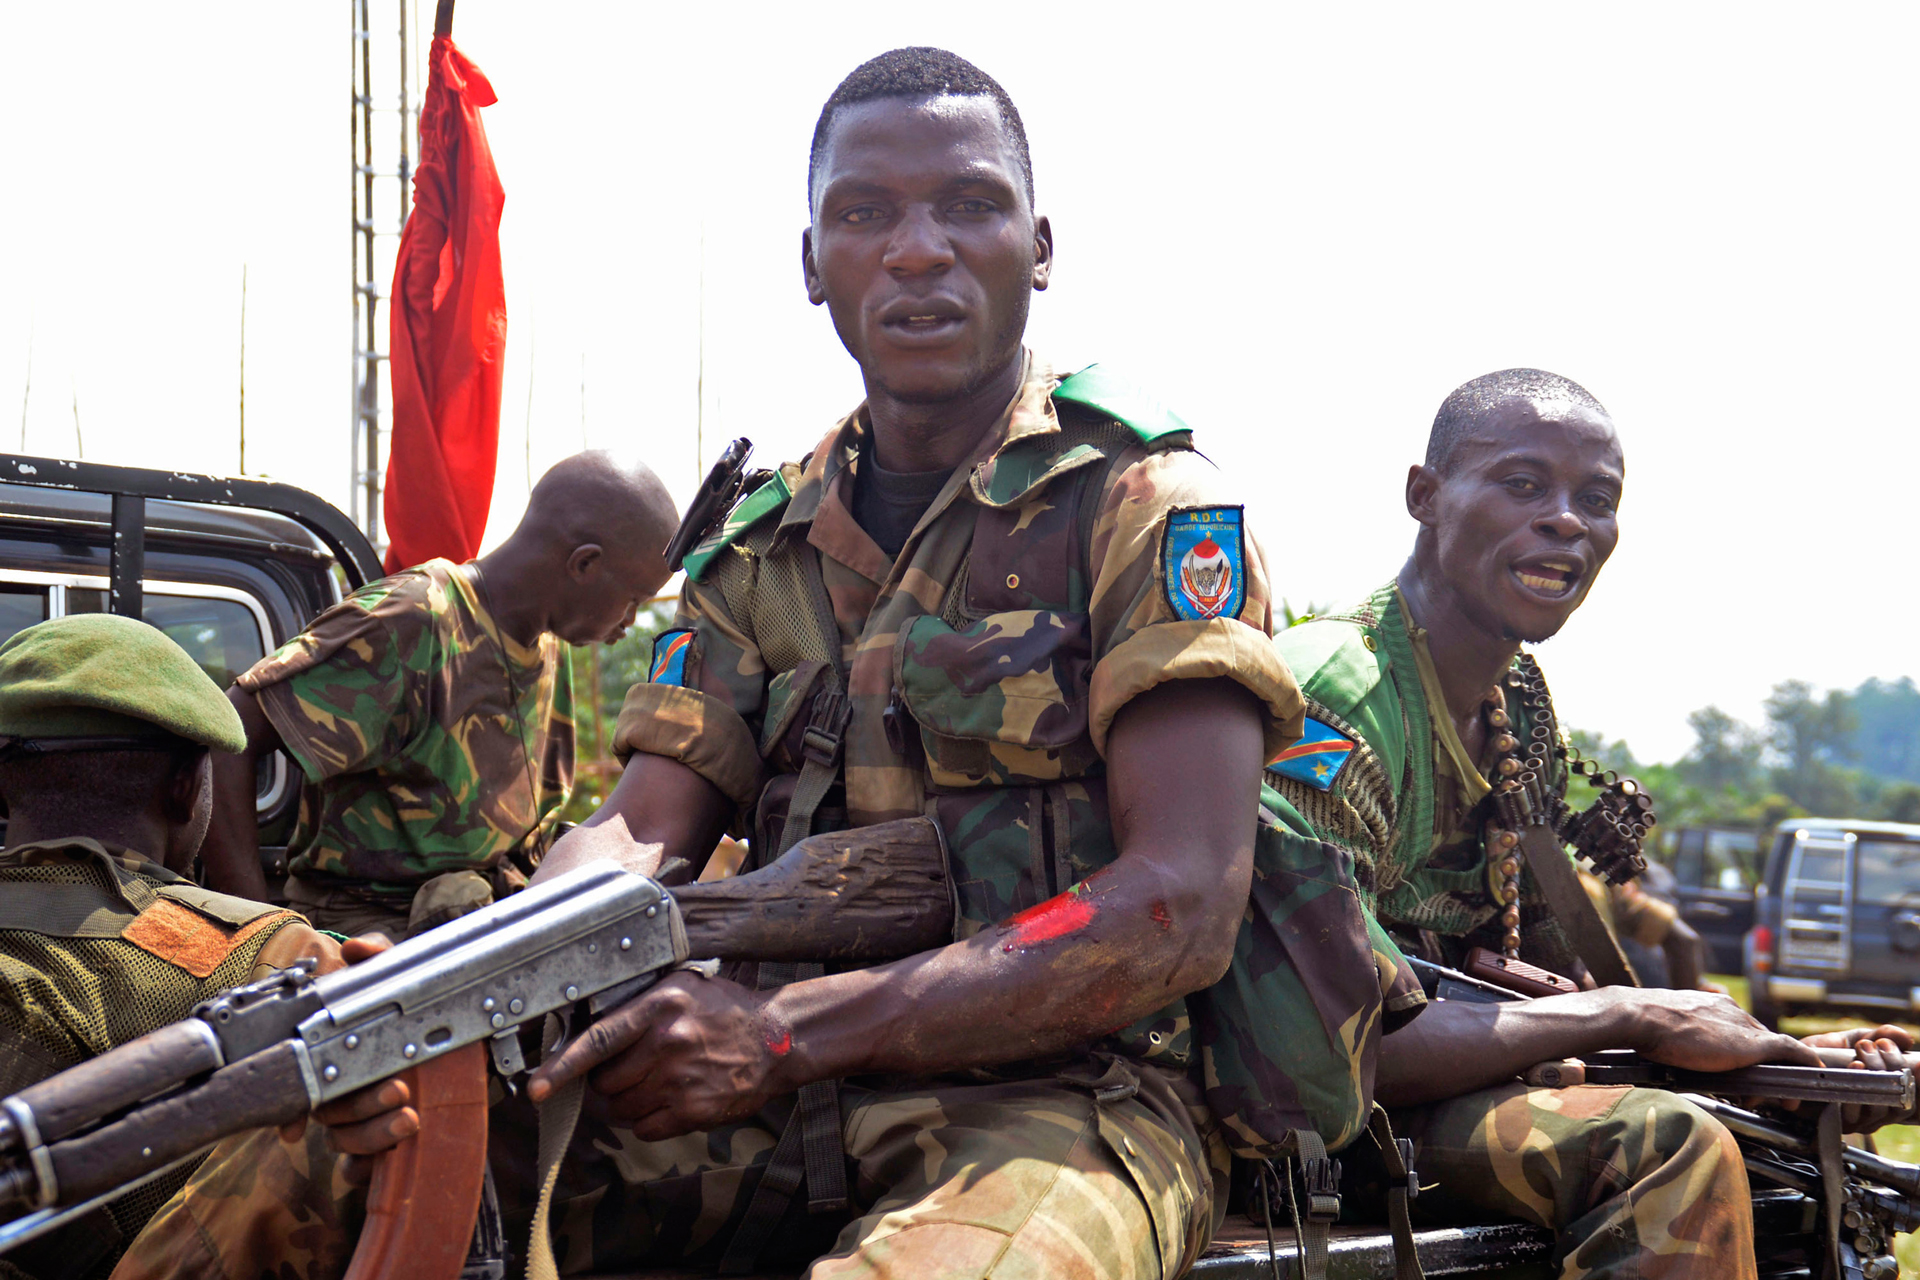 Más de 100 muertos en el Congo por enfrentamientos con el ejército